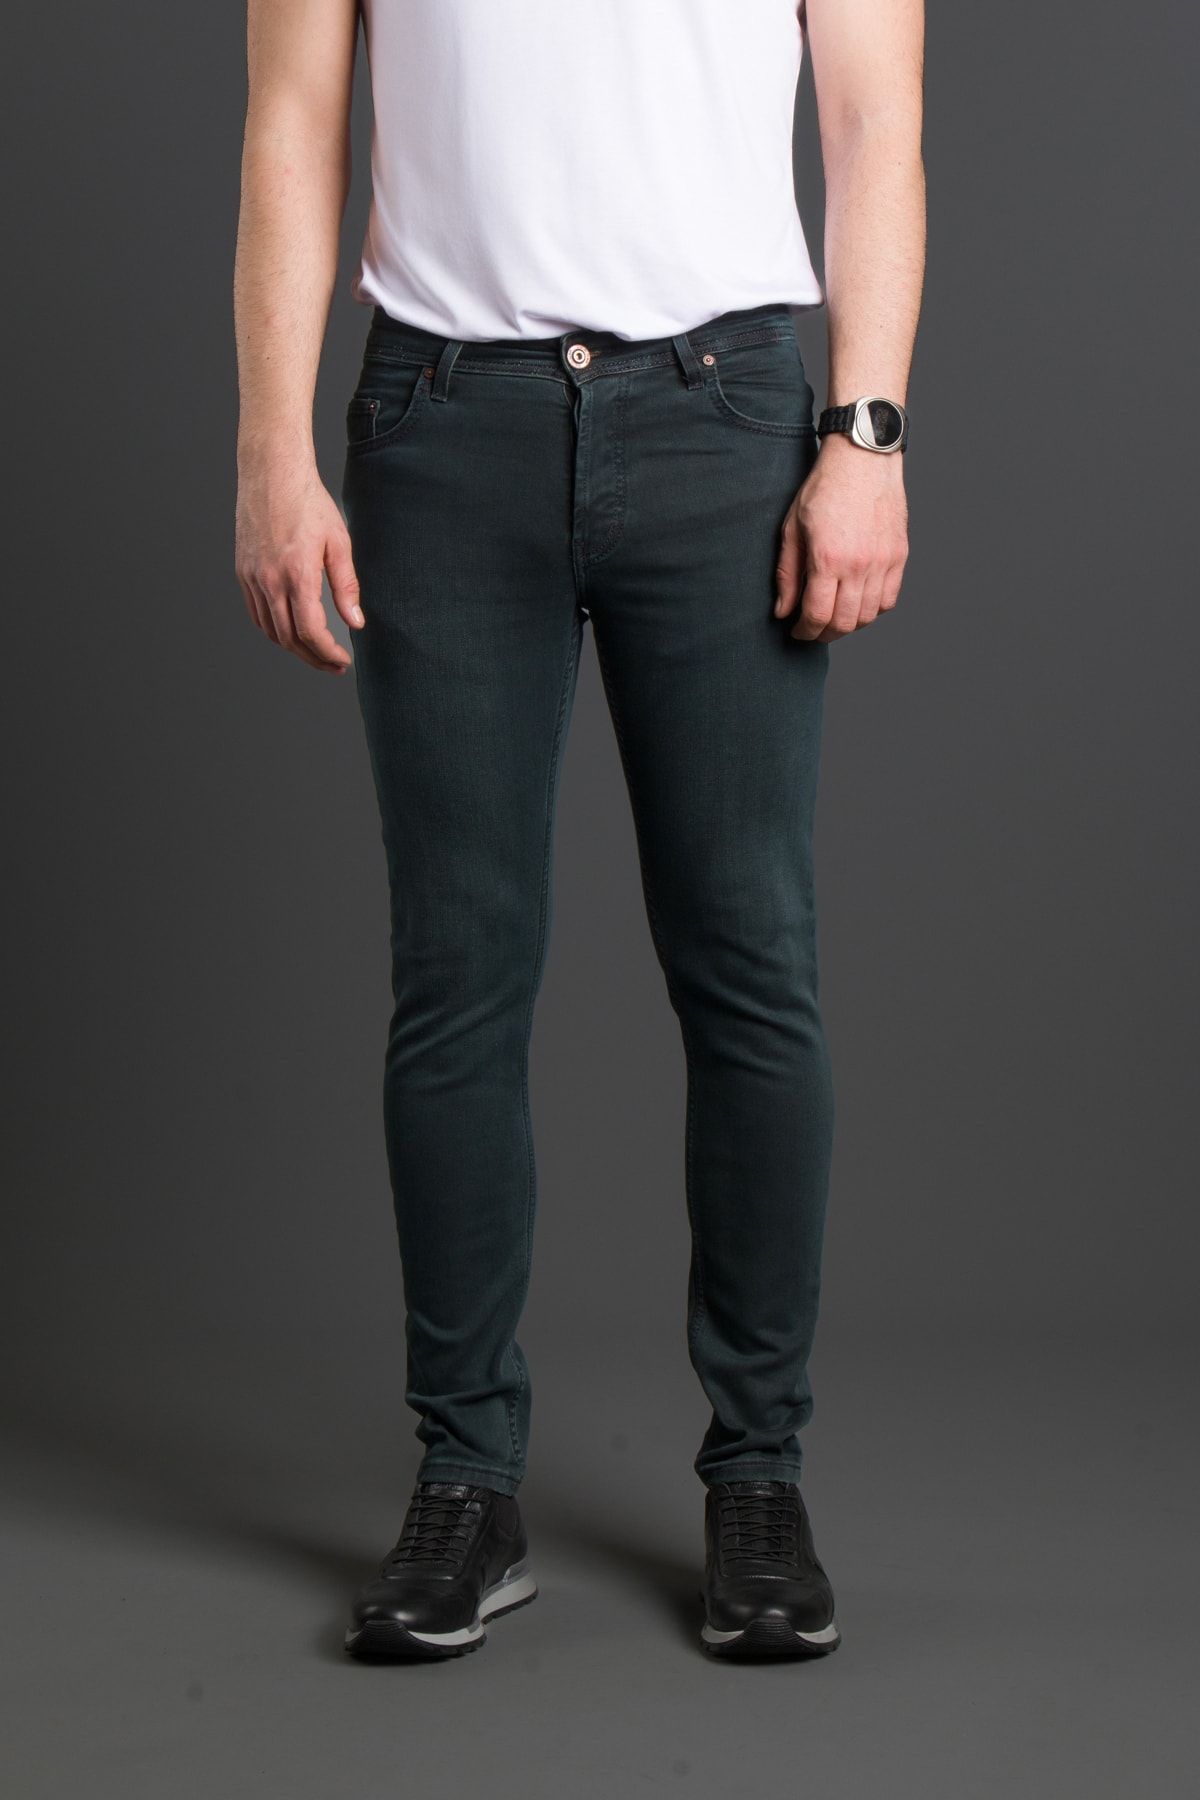 ZEKİ ÖZER Erkek Haki-tint Slimfit Jeans